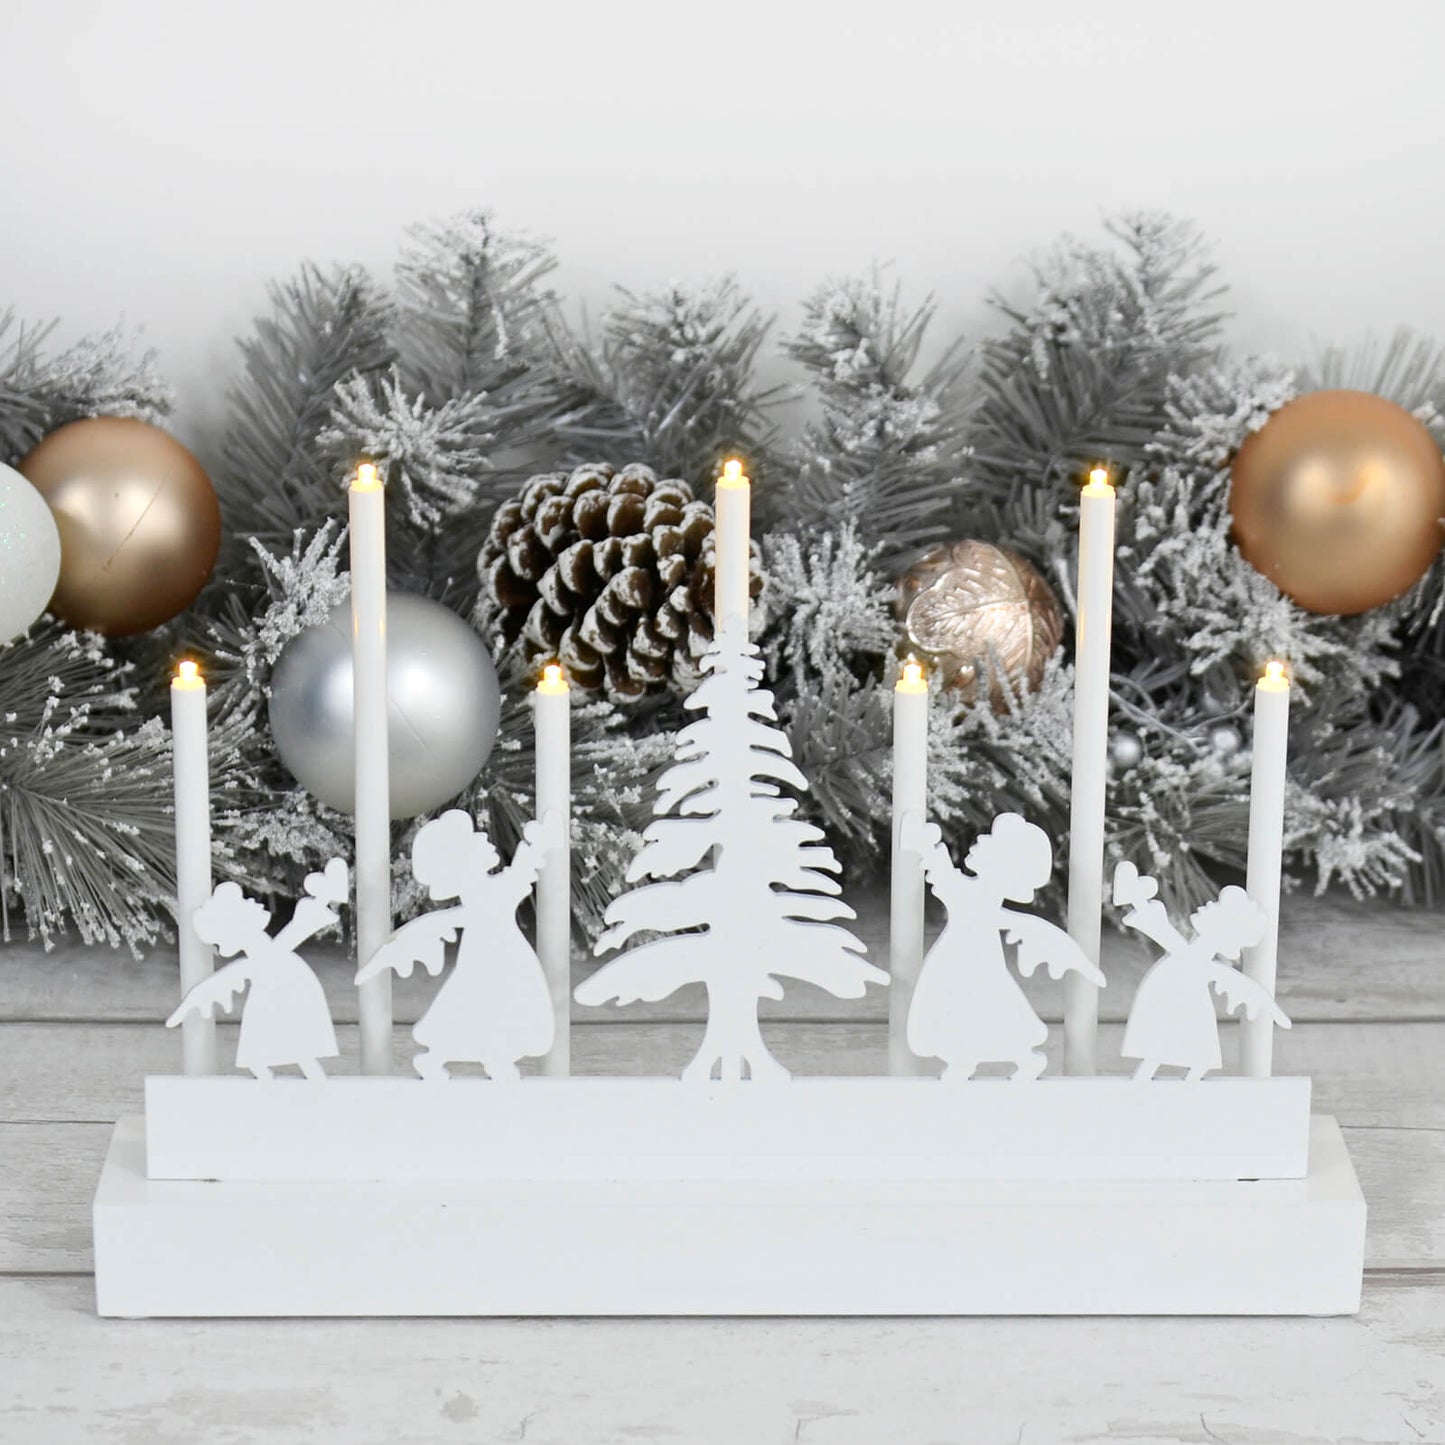 Mr Crimbo 7 Light Christmas Candle Silhouette White 32cm - MrCrimbo.co.uk -XS7162 - Angel -Decorations